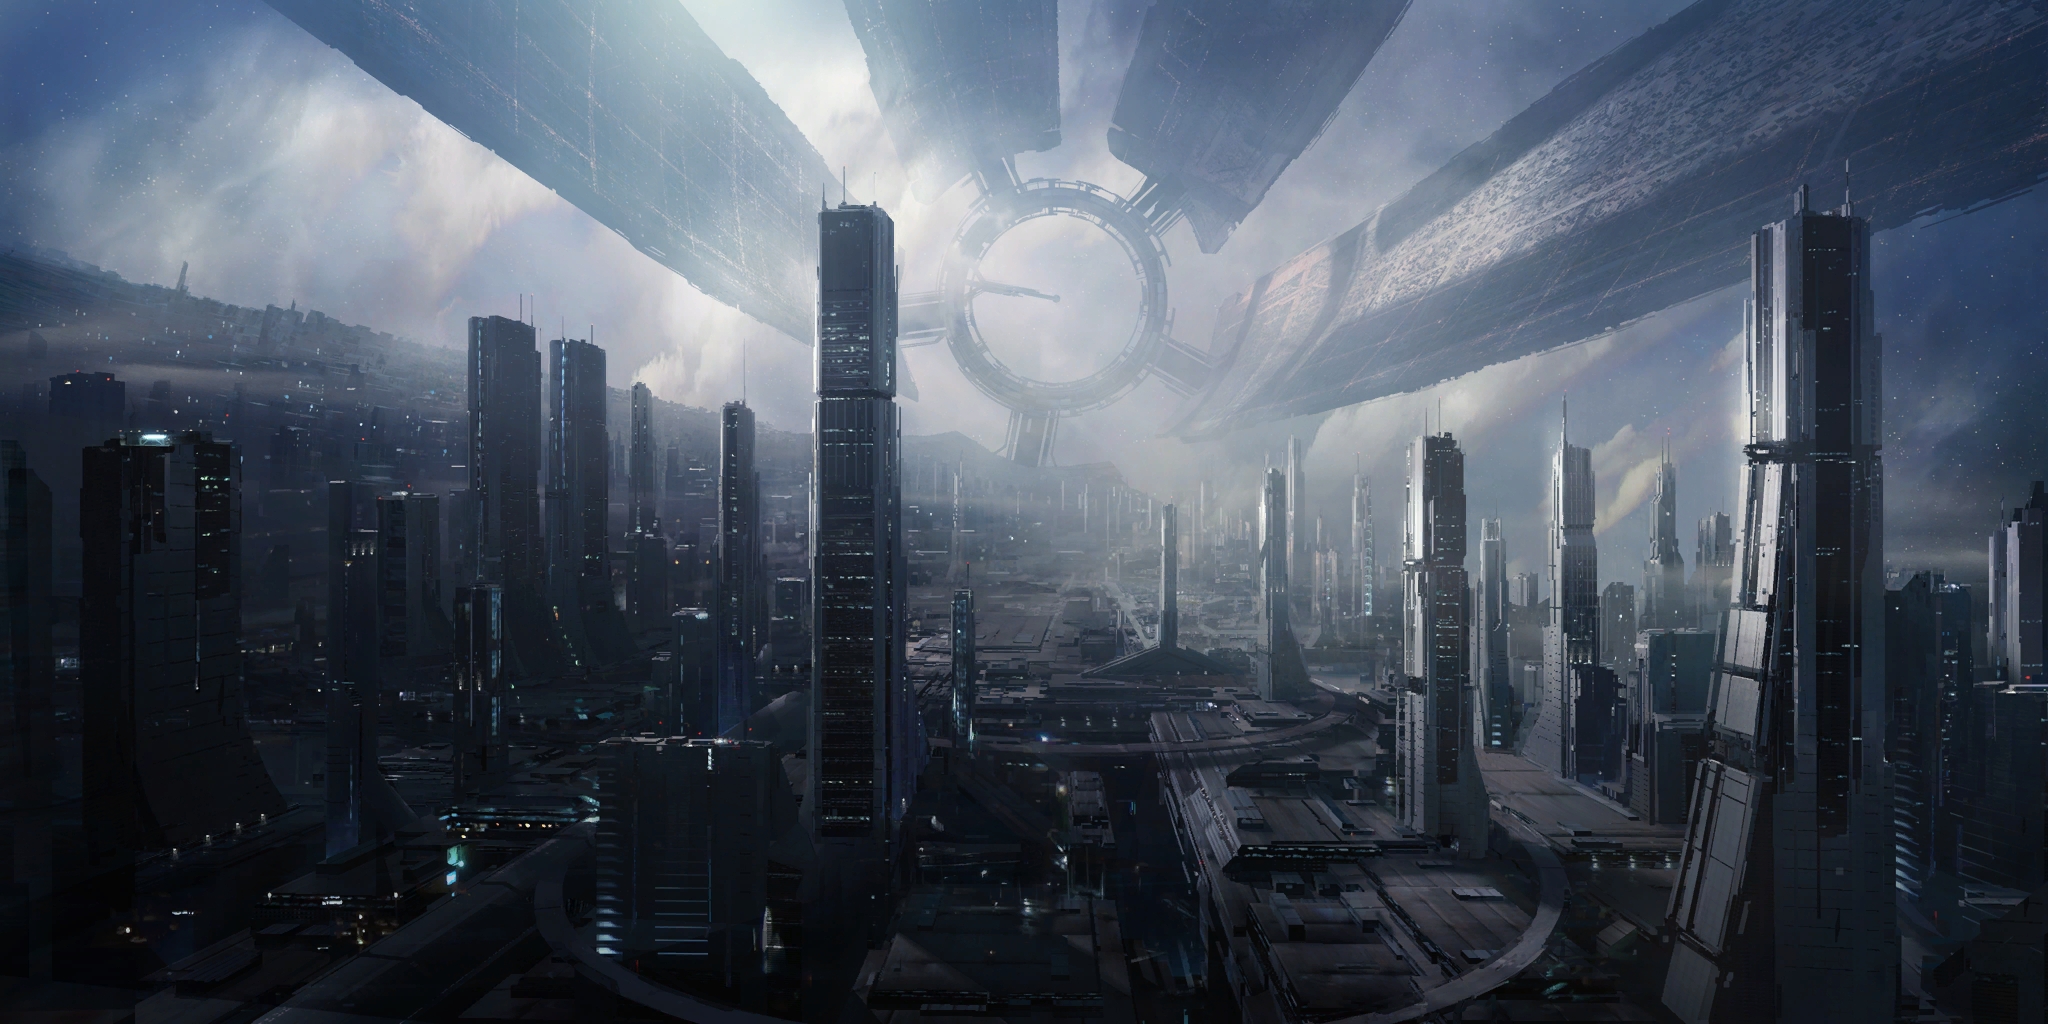 High Resolution Wallpaper | Mass Effect 2048x1024 px